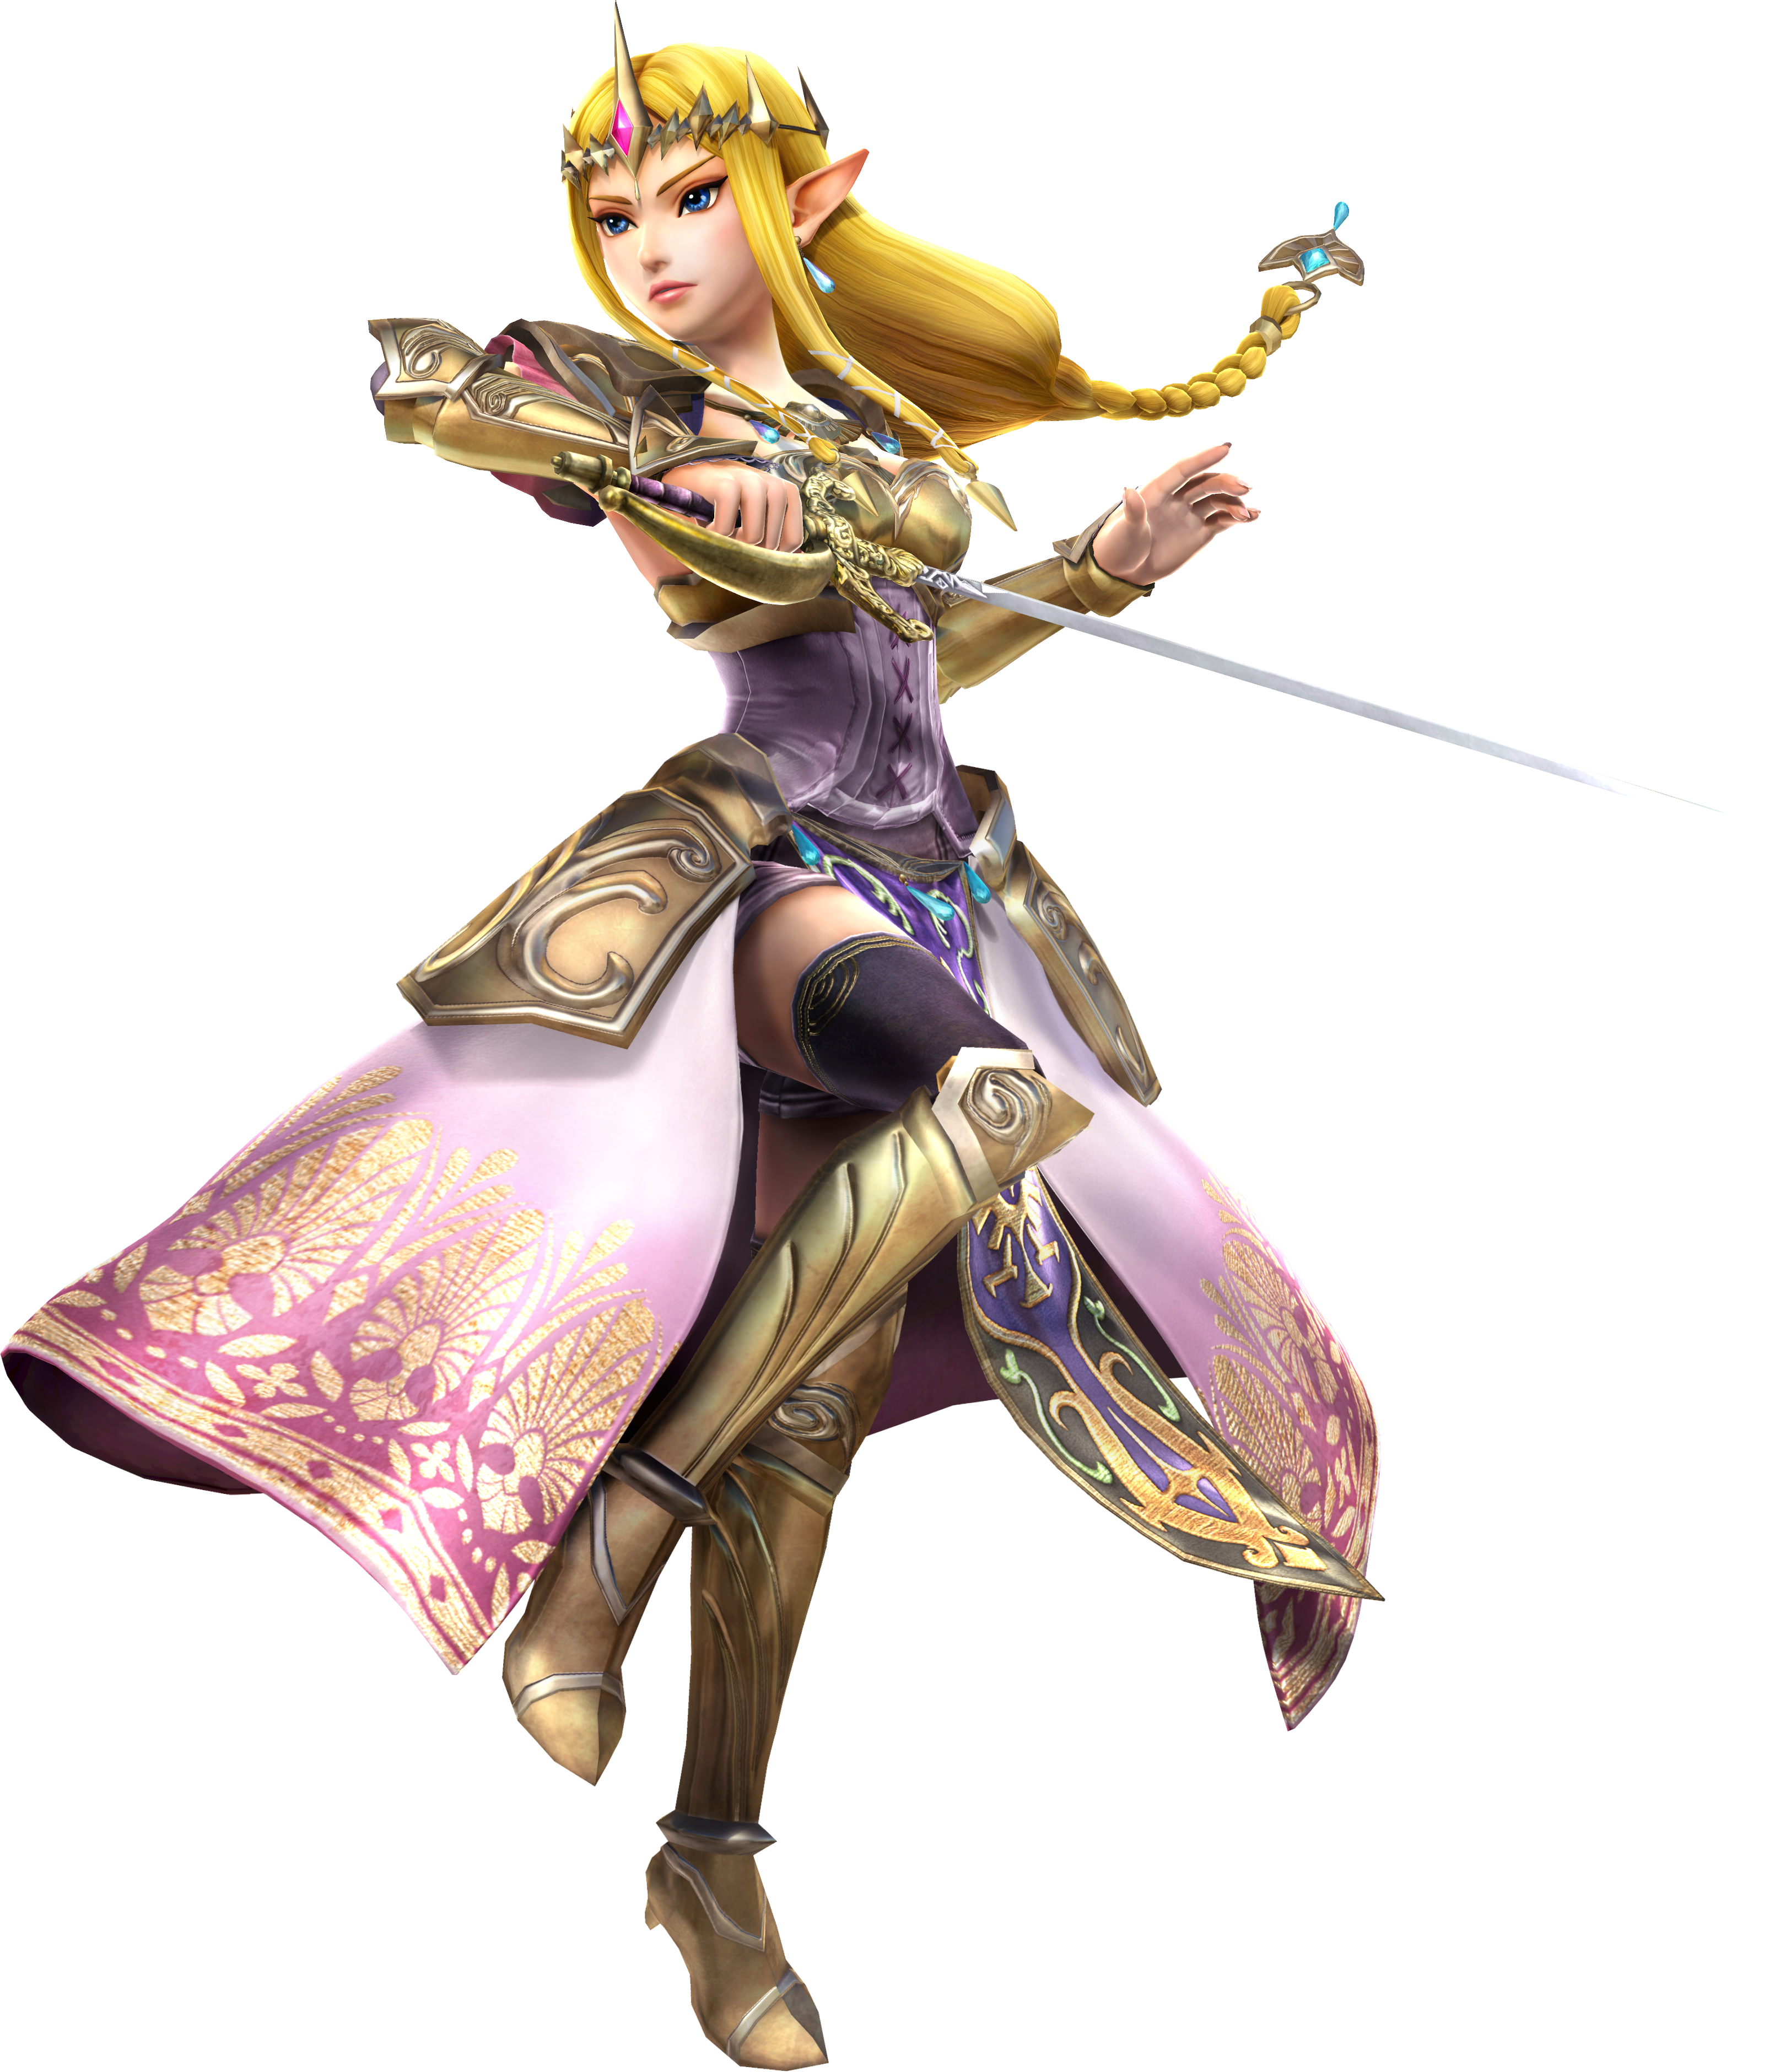 The Legend of Zelda: A Link Between Worlds characters, Zeldapedia